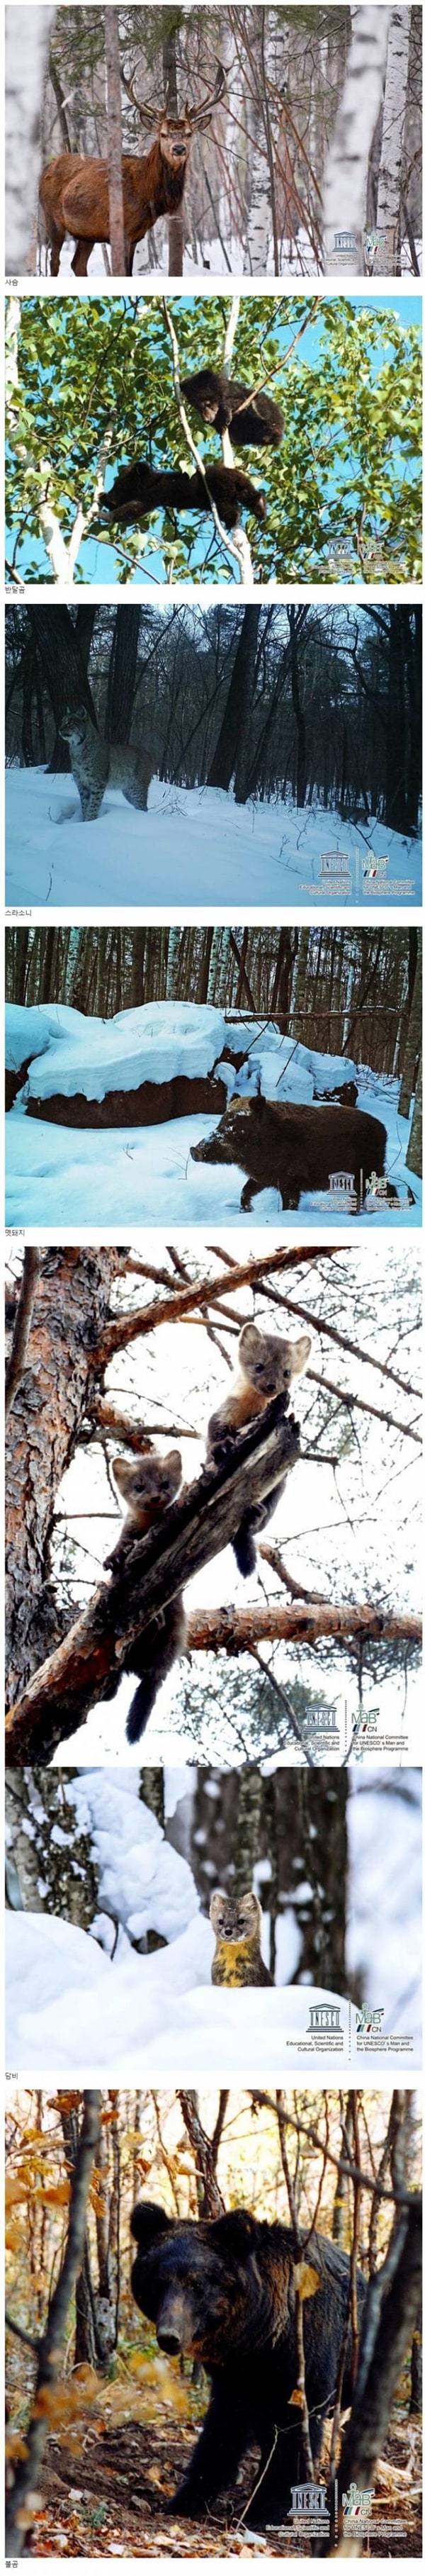 먹튀검증소 유머 최근 백두산에서 찍힌 야생동물들